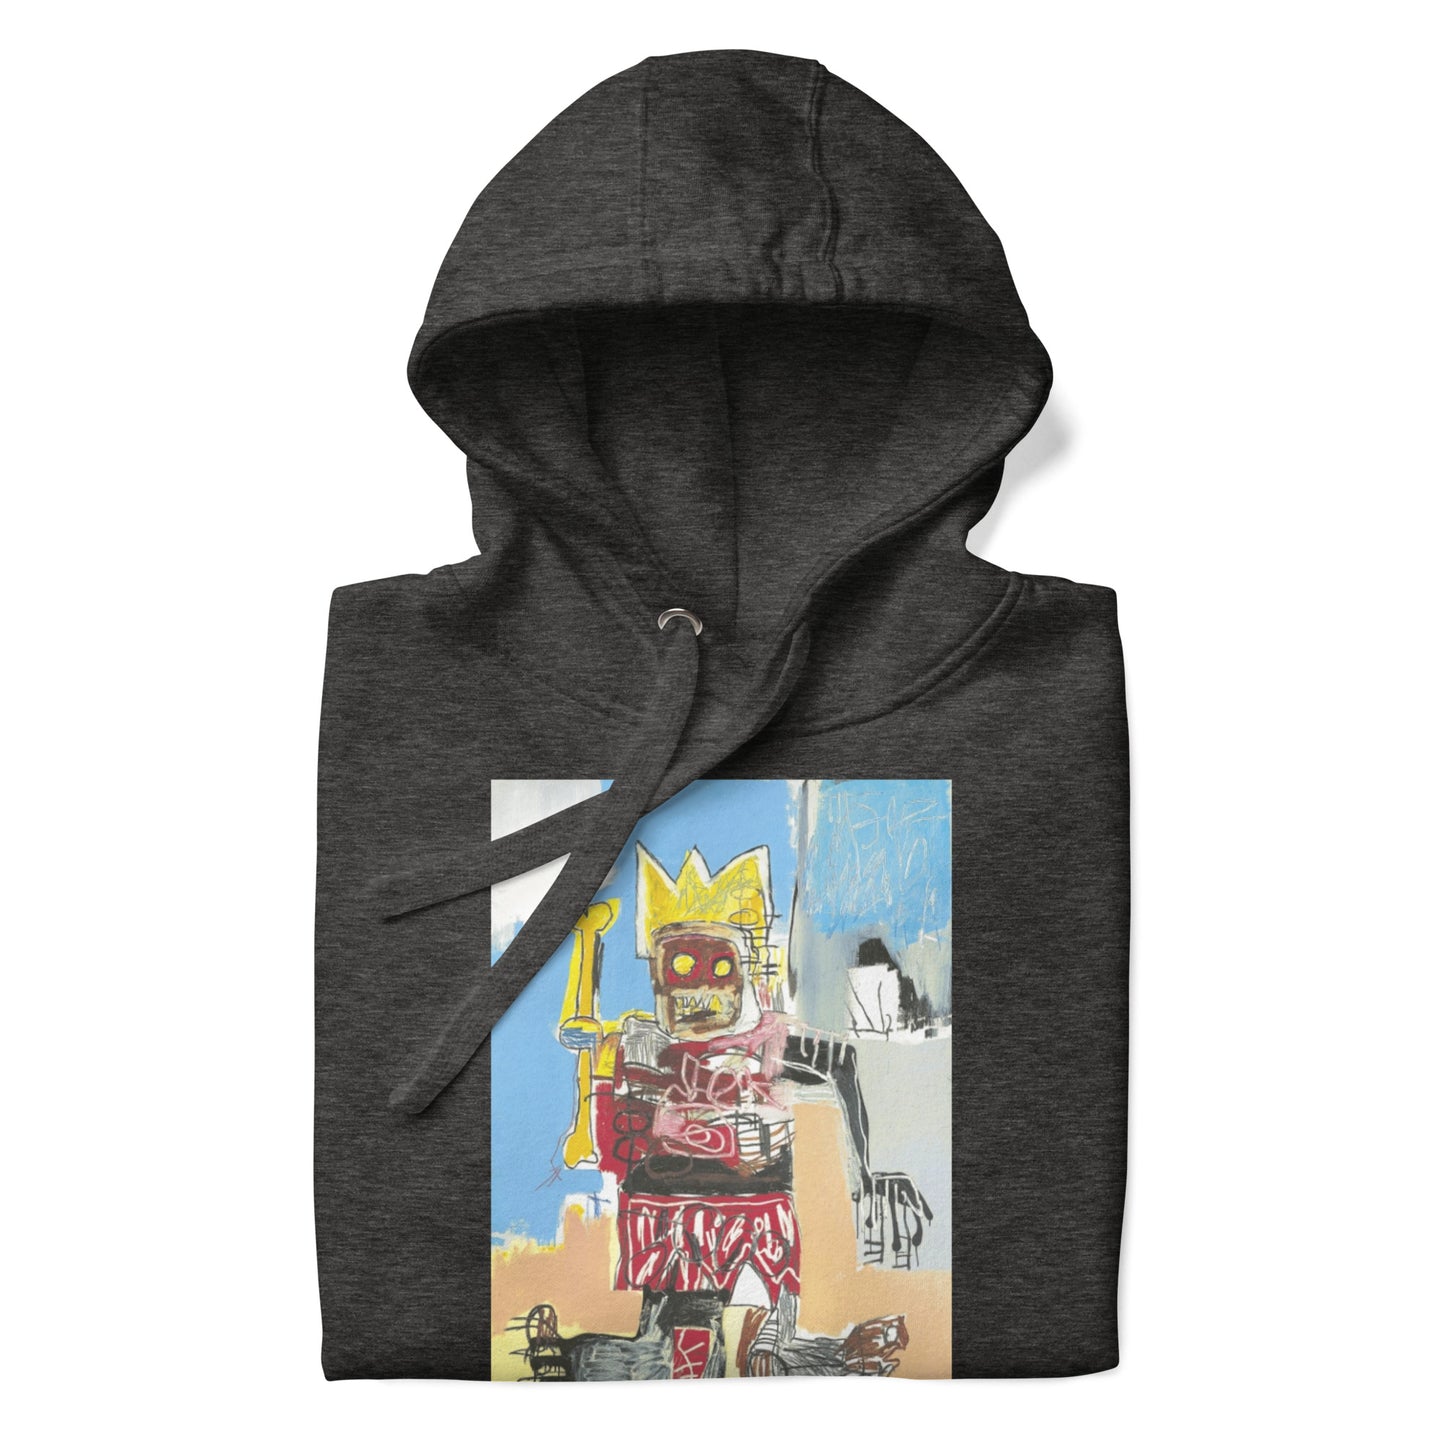 Jean-Michel Basquiat "Untitled" Artwork Printed Premium Streetwear Sweatshirt Hoodie Charcoal Grey